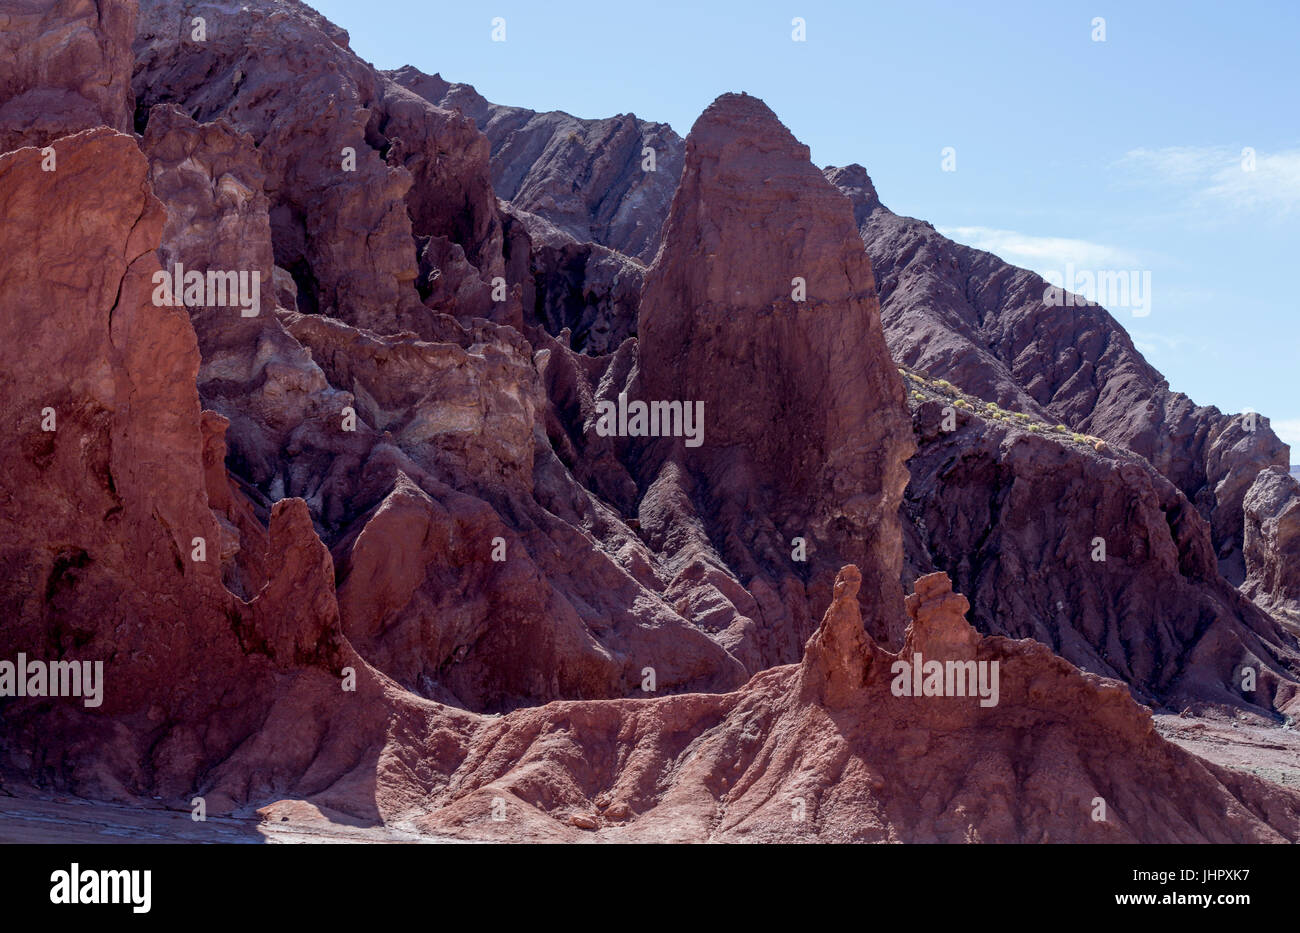 Rainbow Valley dans le désert d'Atacama au Chili. Les roches riches en minéraux des montagnes Domeyko donner le la vallée de couleurs variées allant du rouge au vert. Banque D'Images